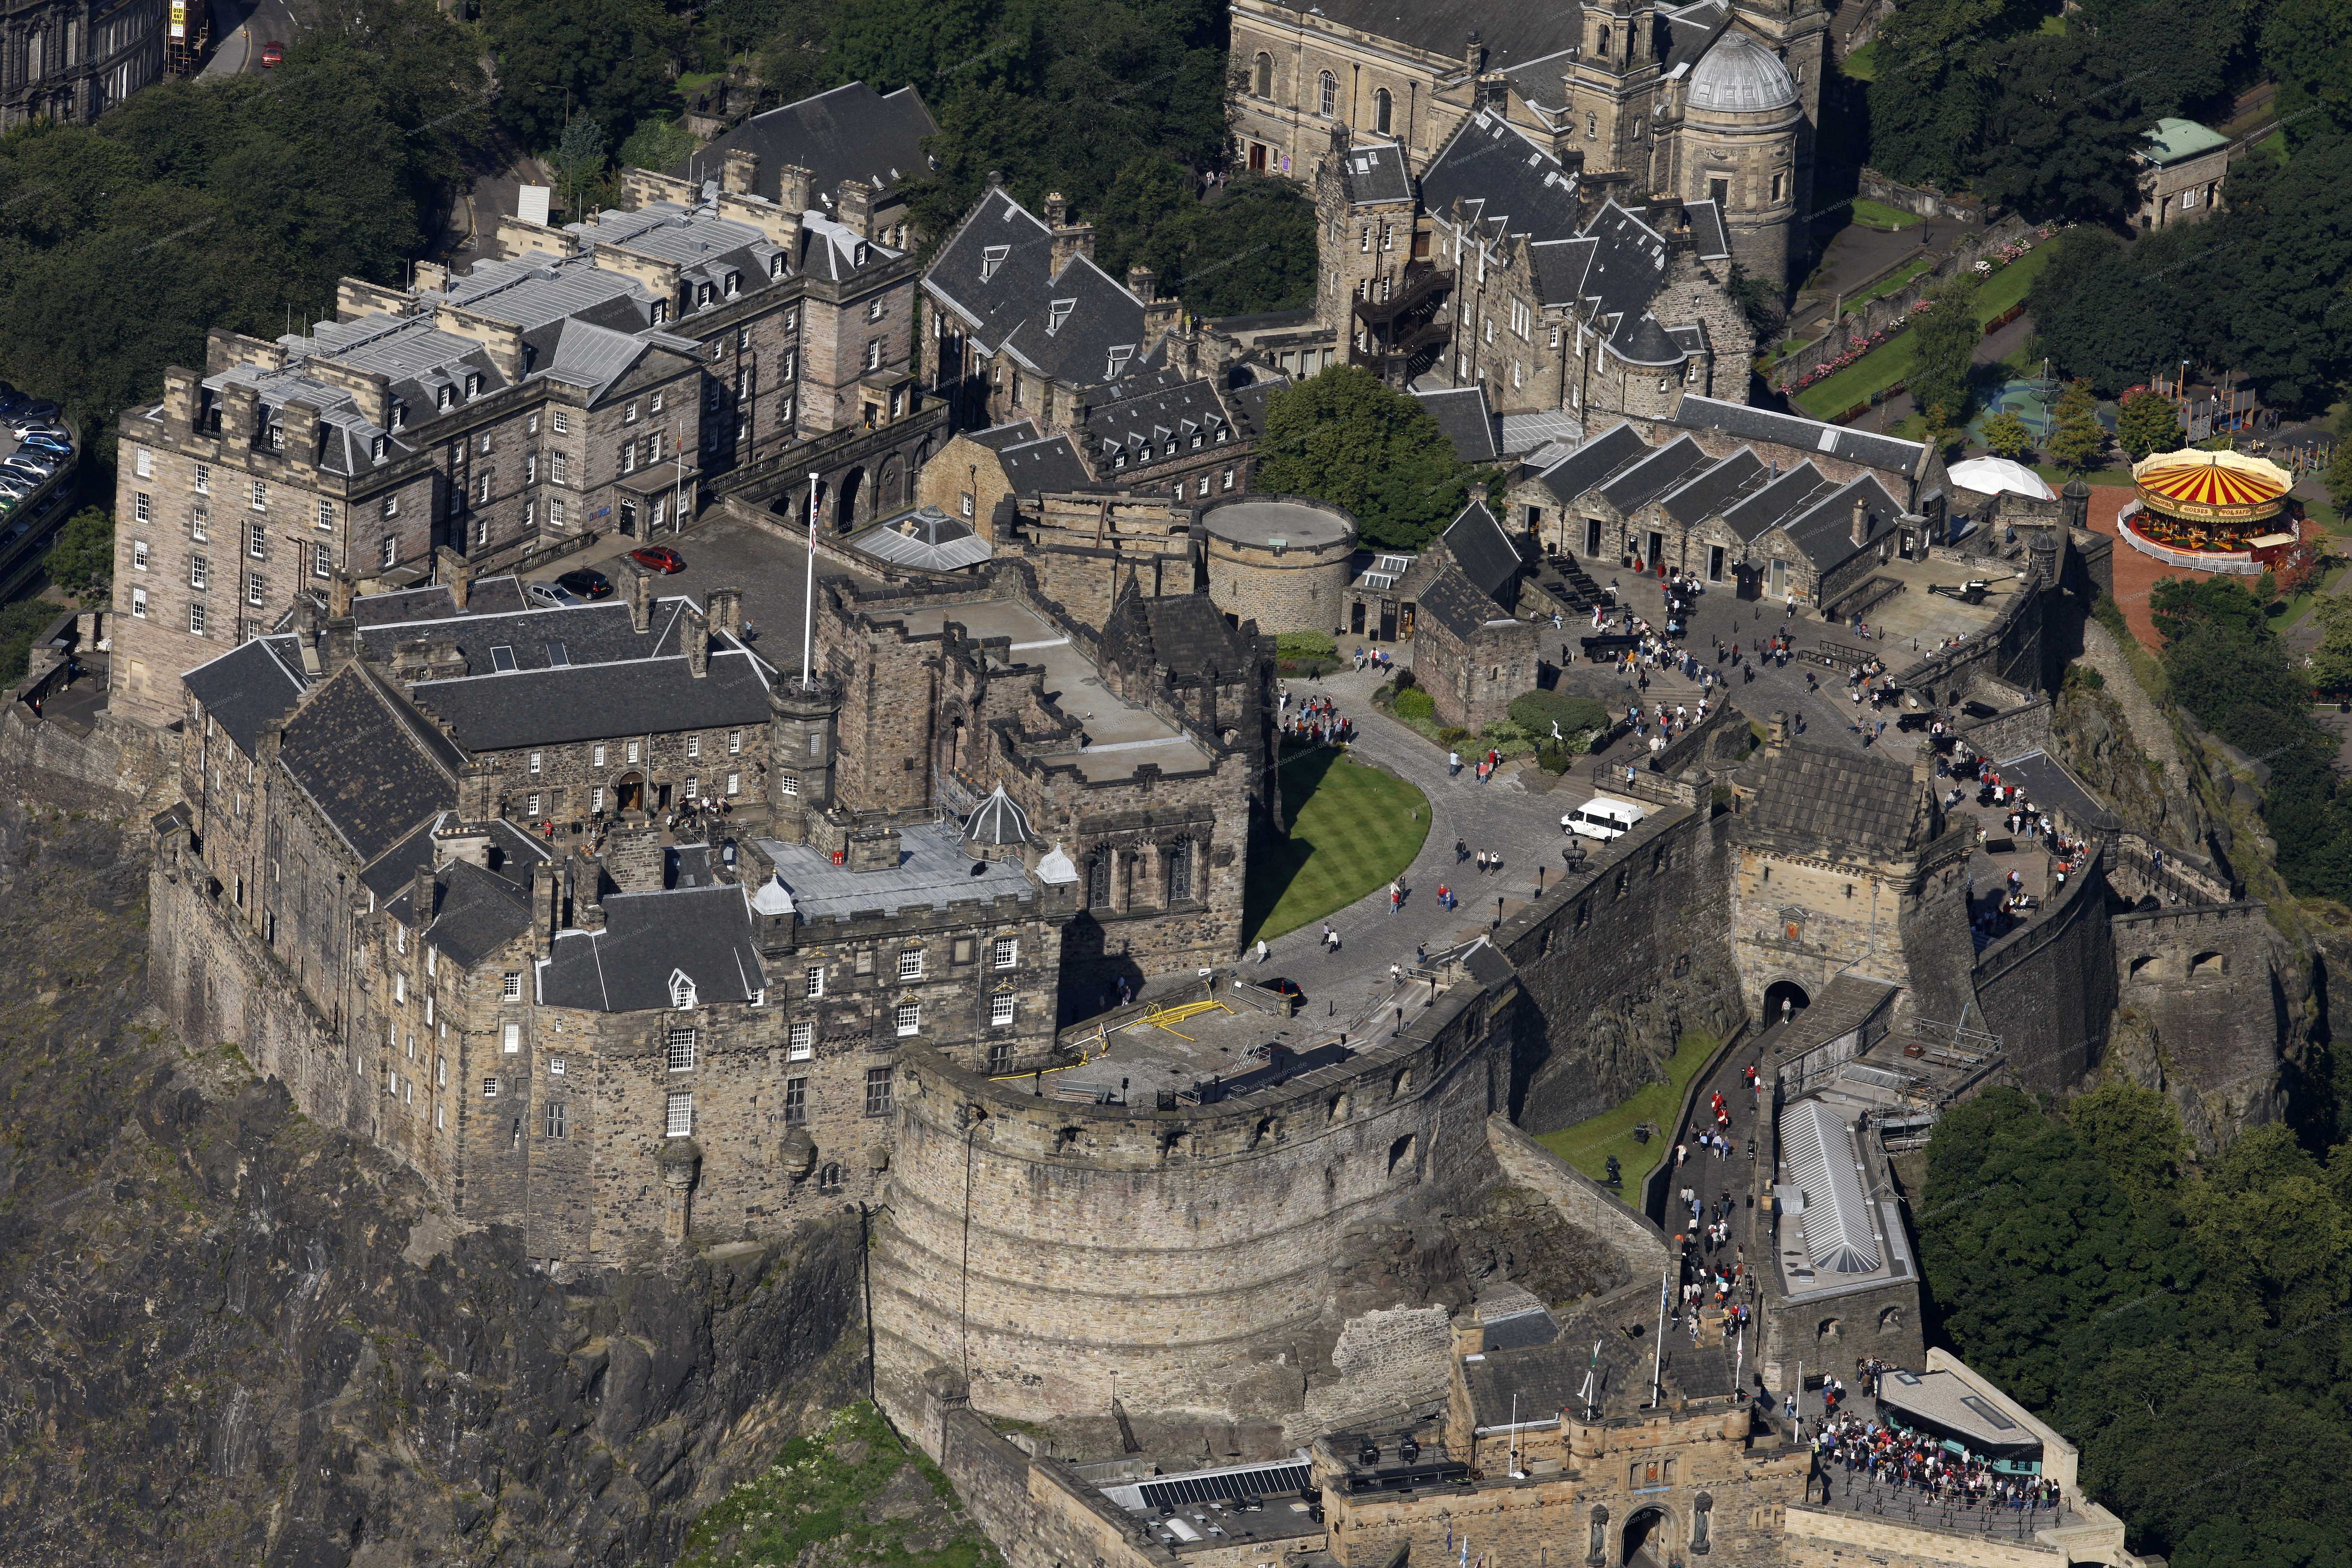 Edinburgh Castle #8